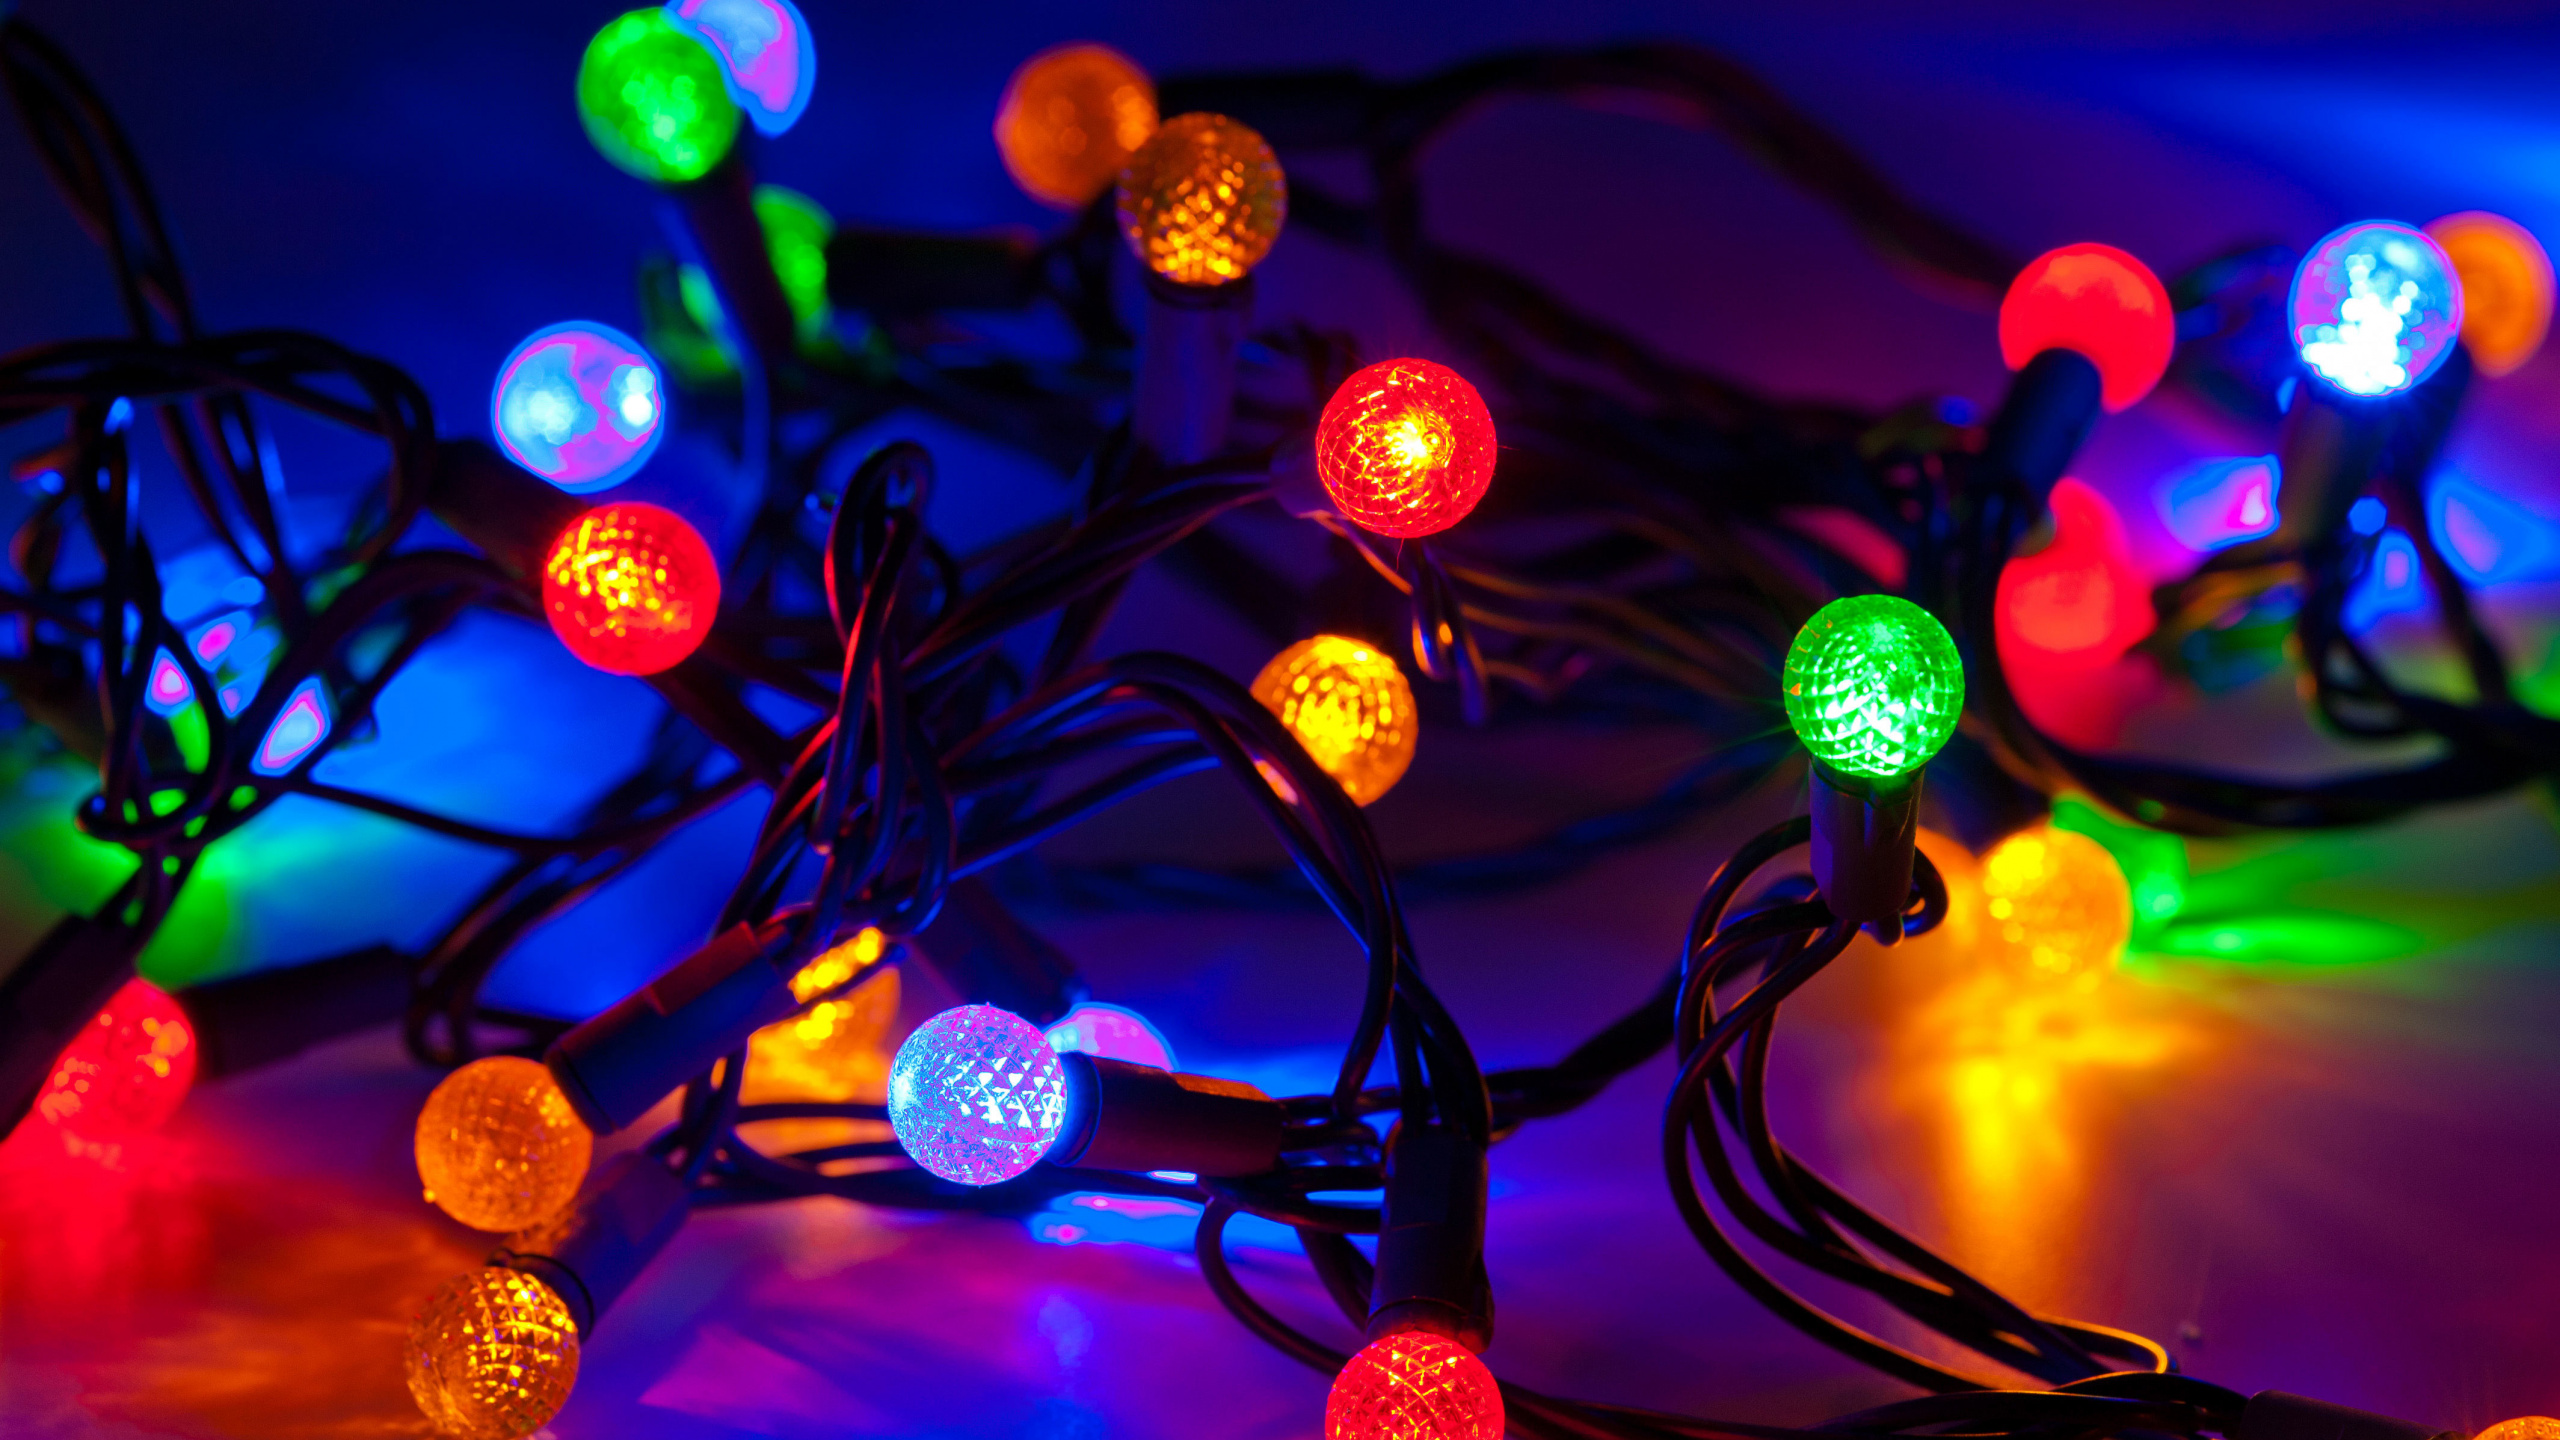 Weihnachtsbeleuchtung, Weihnachten, Licht, Weihnachtsdekoration, Leuchtdiode. Wallpaper in 2560x1440 Resolution